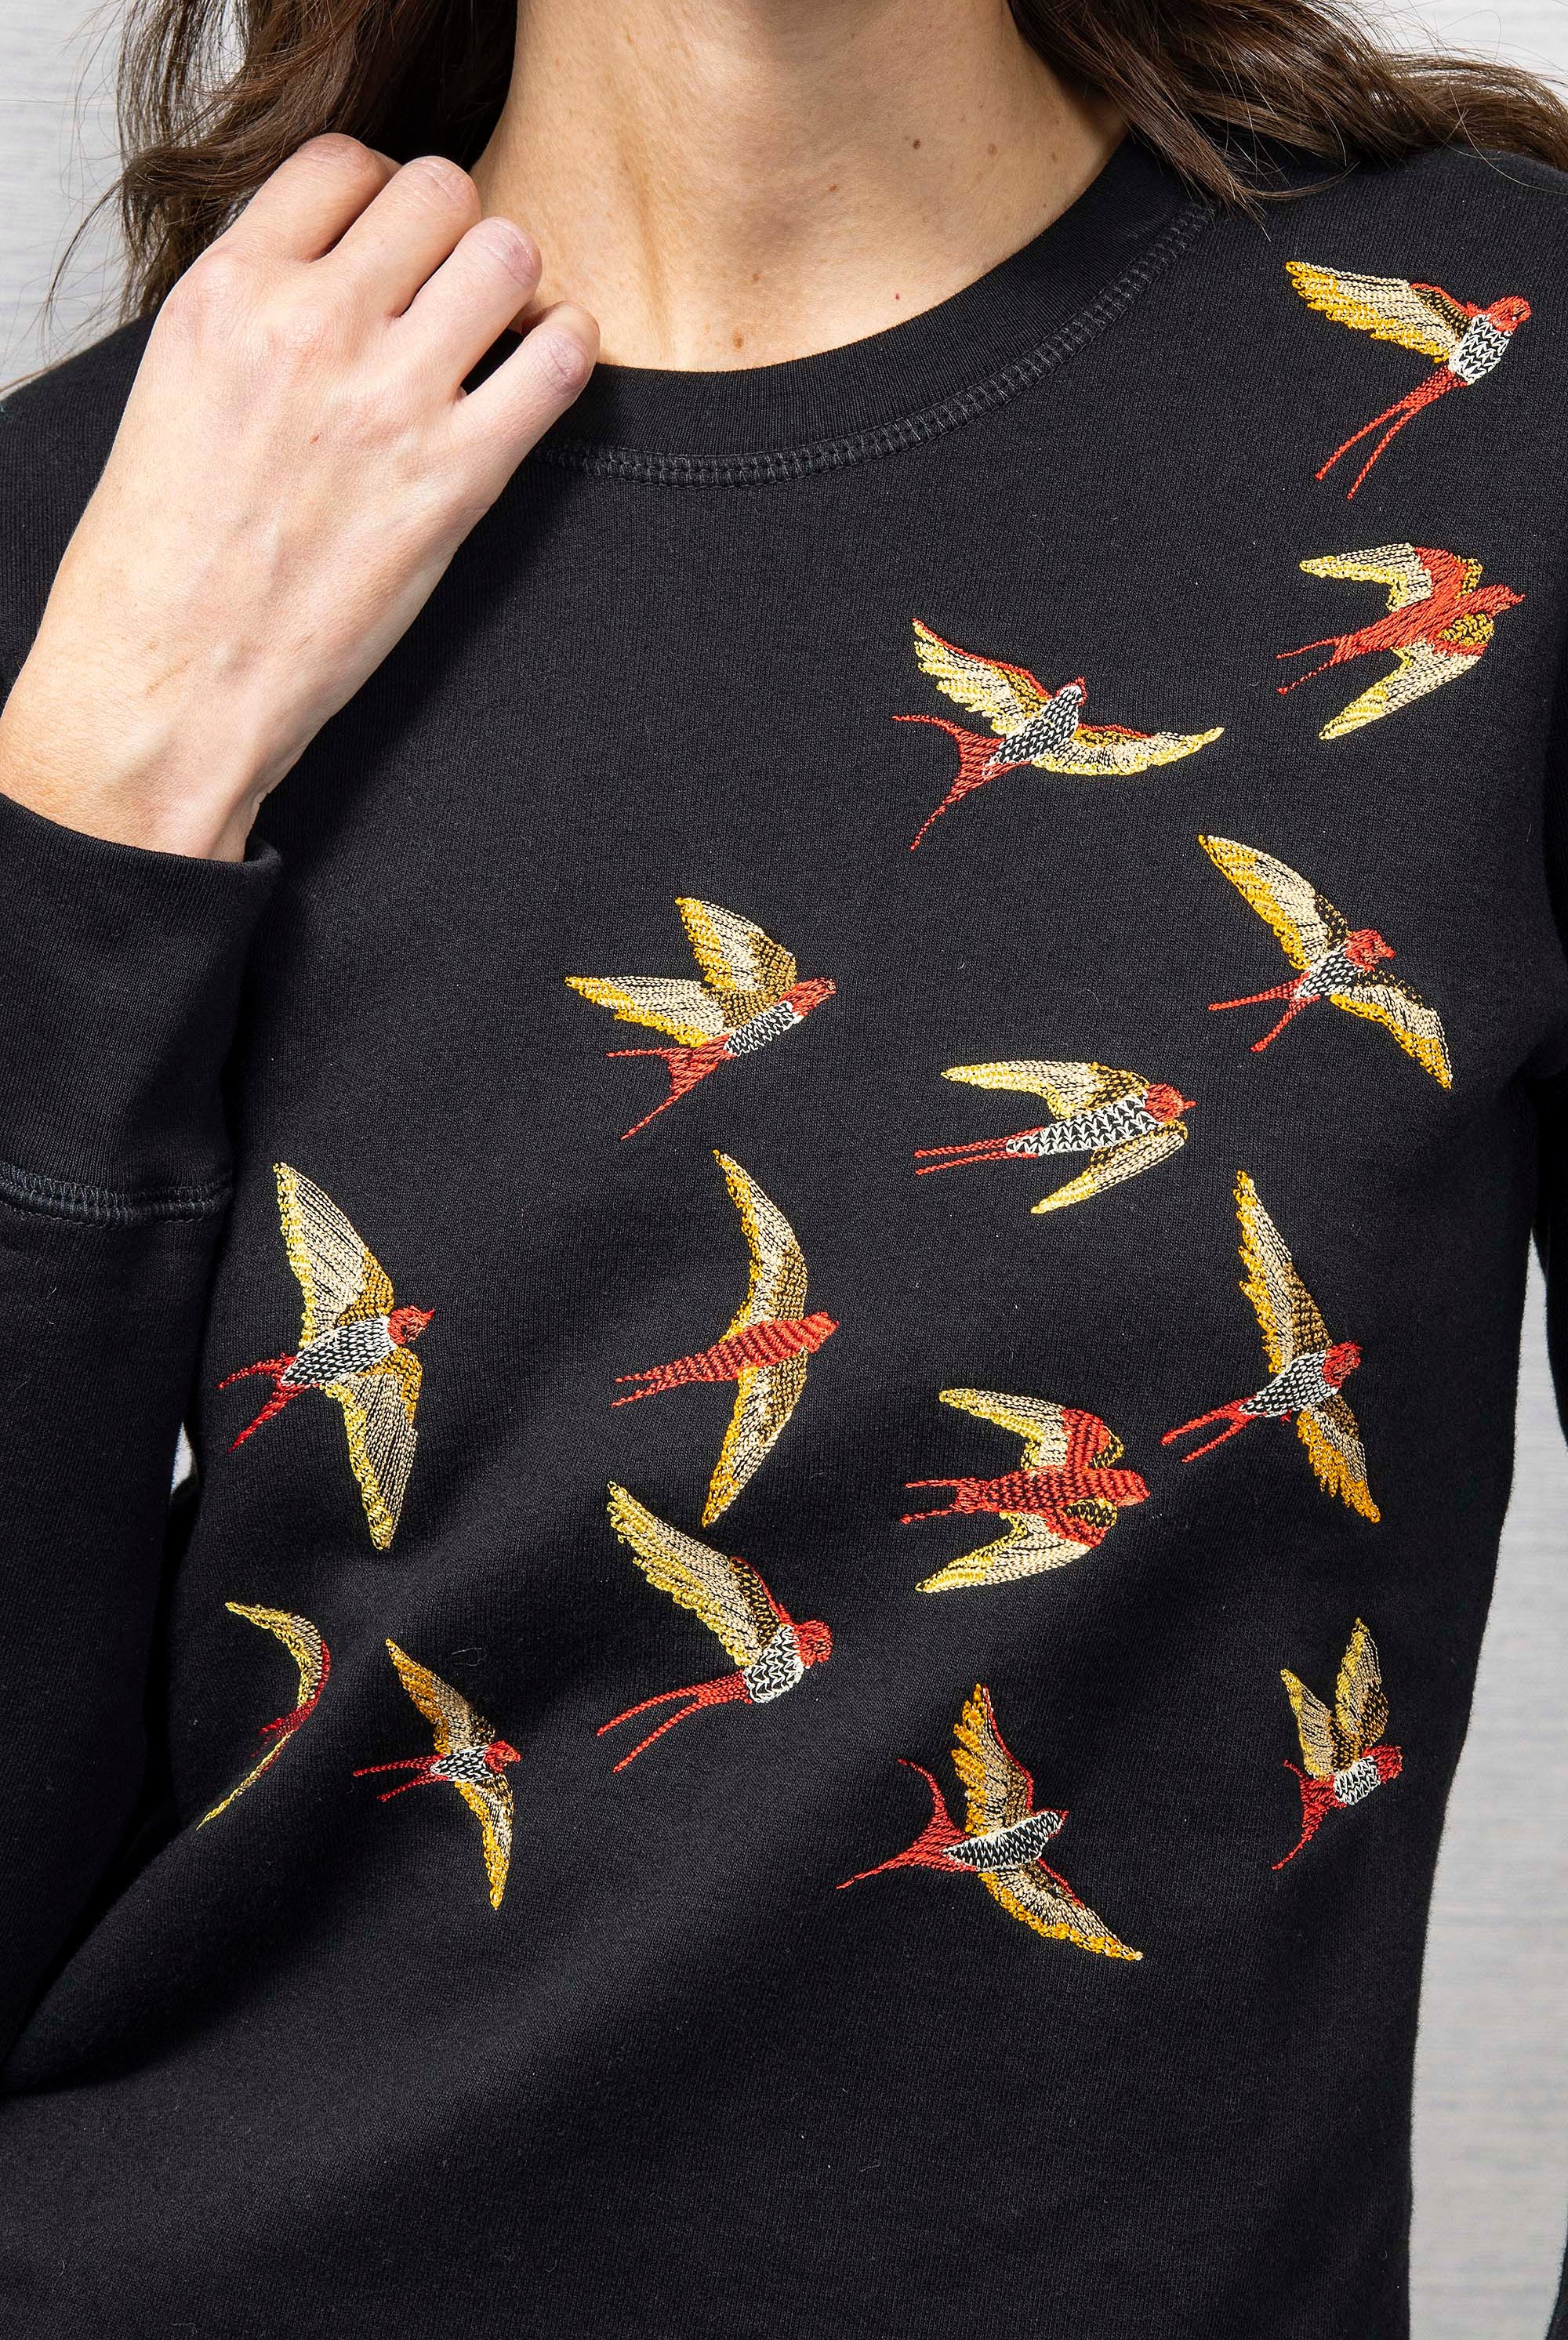 Sweatshirt Macarron Aves Noir sweatshirt femme, pièce basique et vêtement cocooning du quotidien